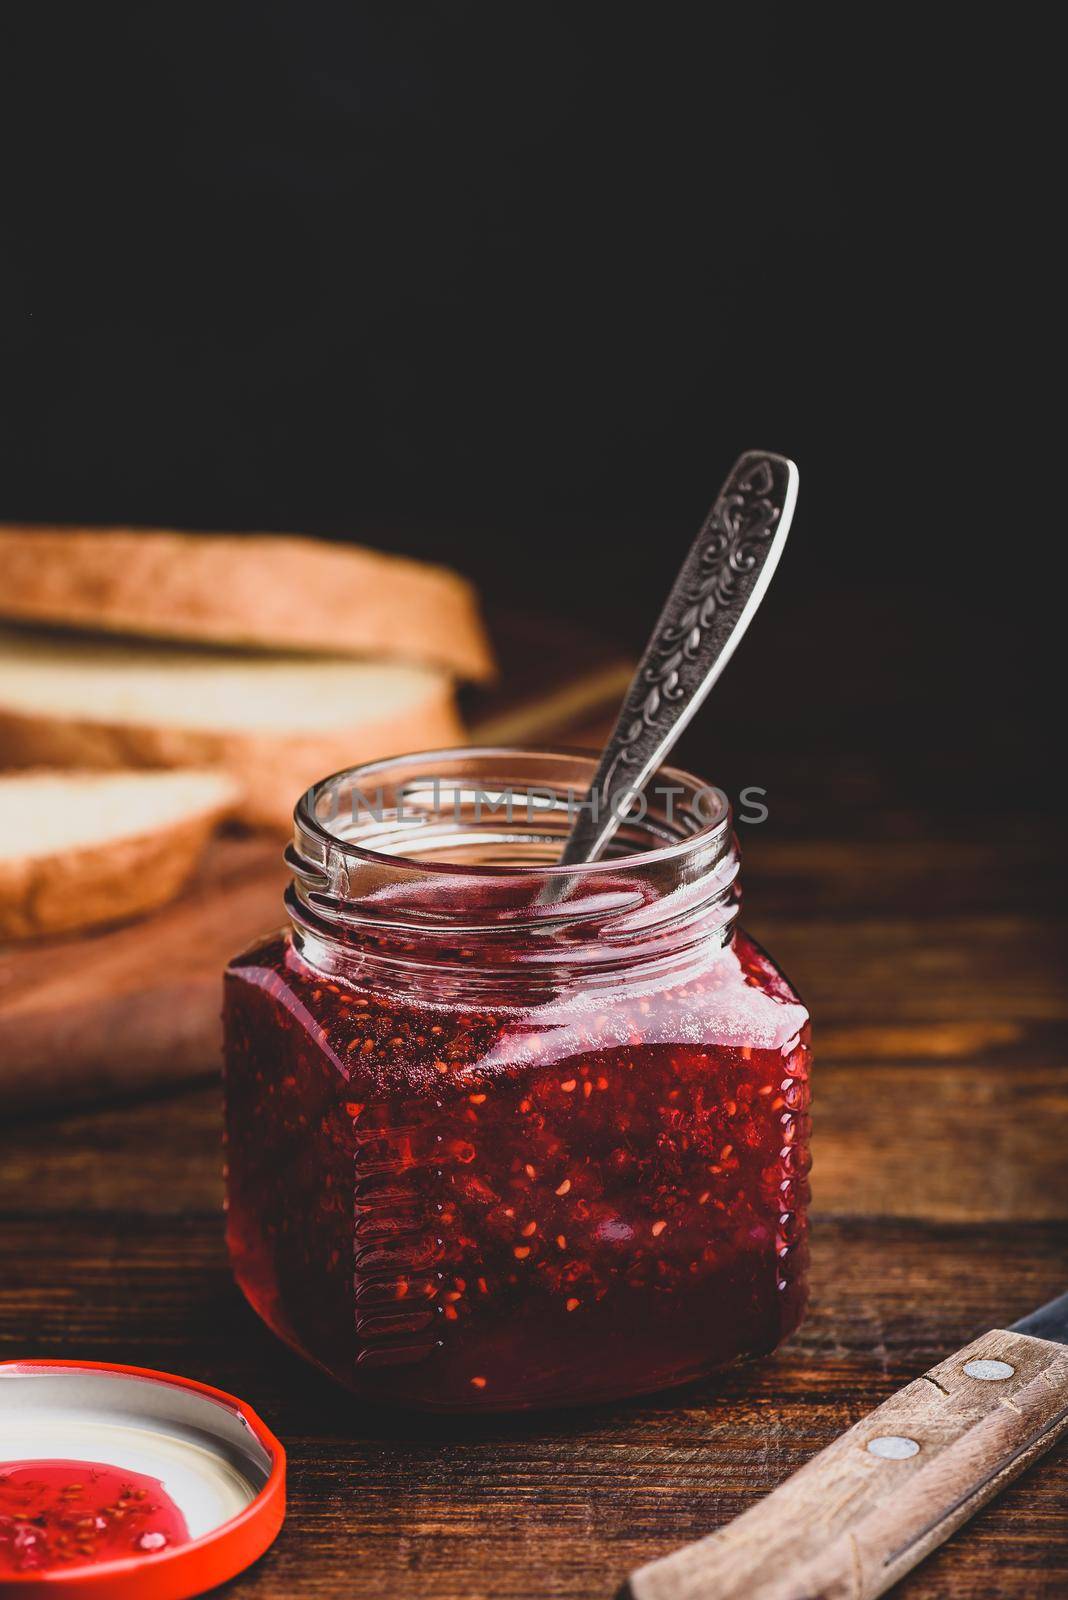 Jar of homemade raspberry jam by Seva_blsv